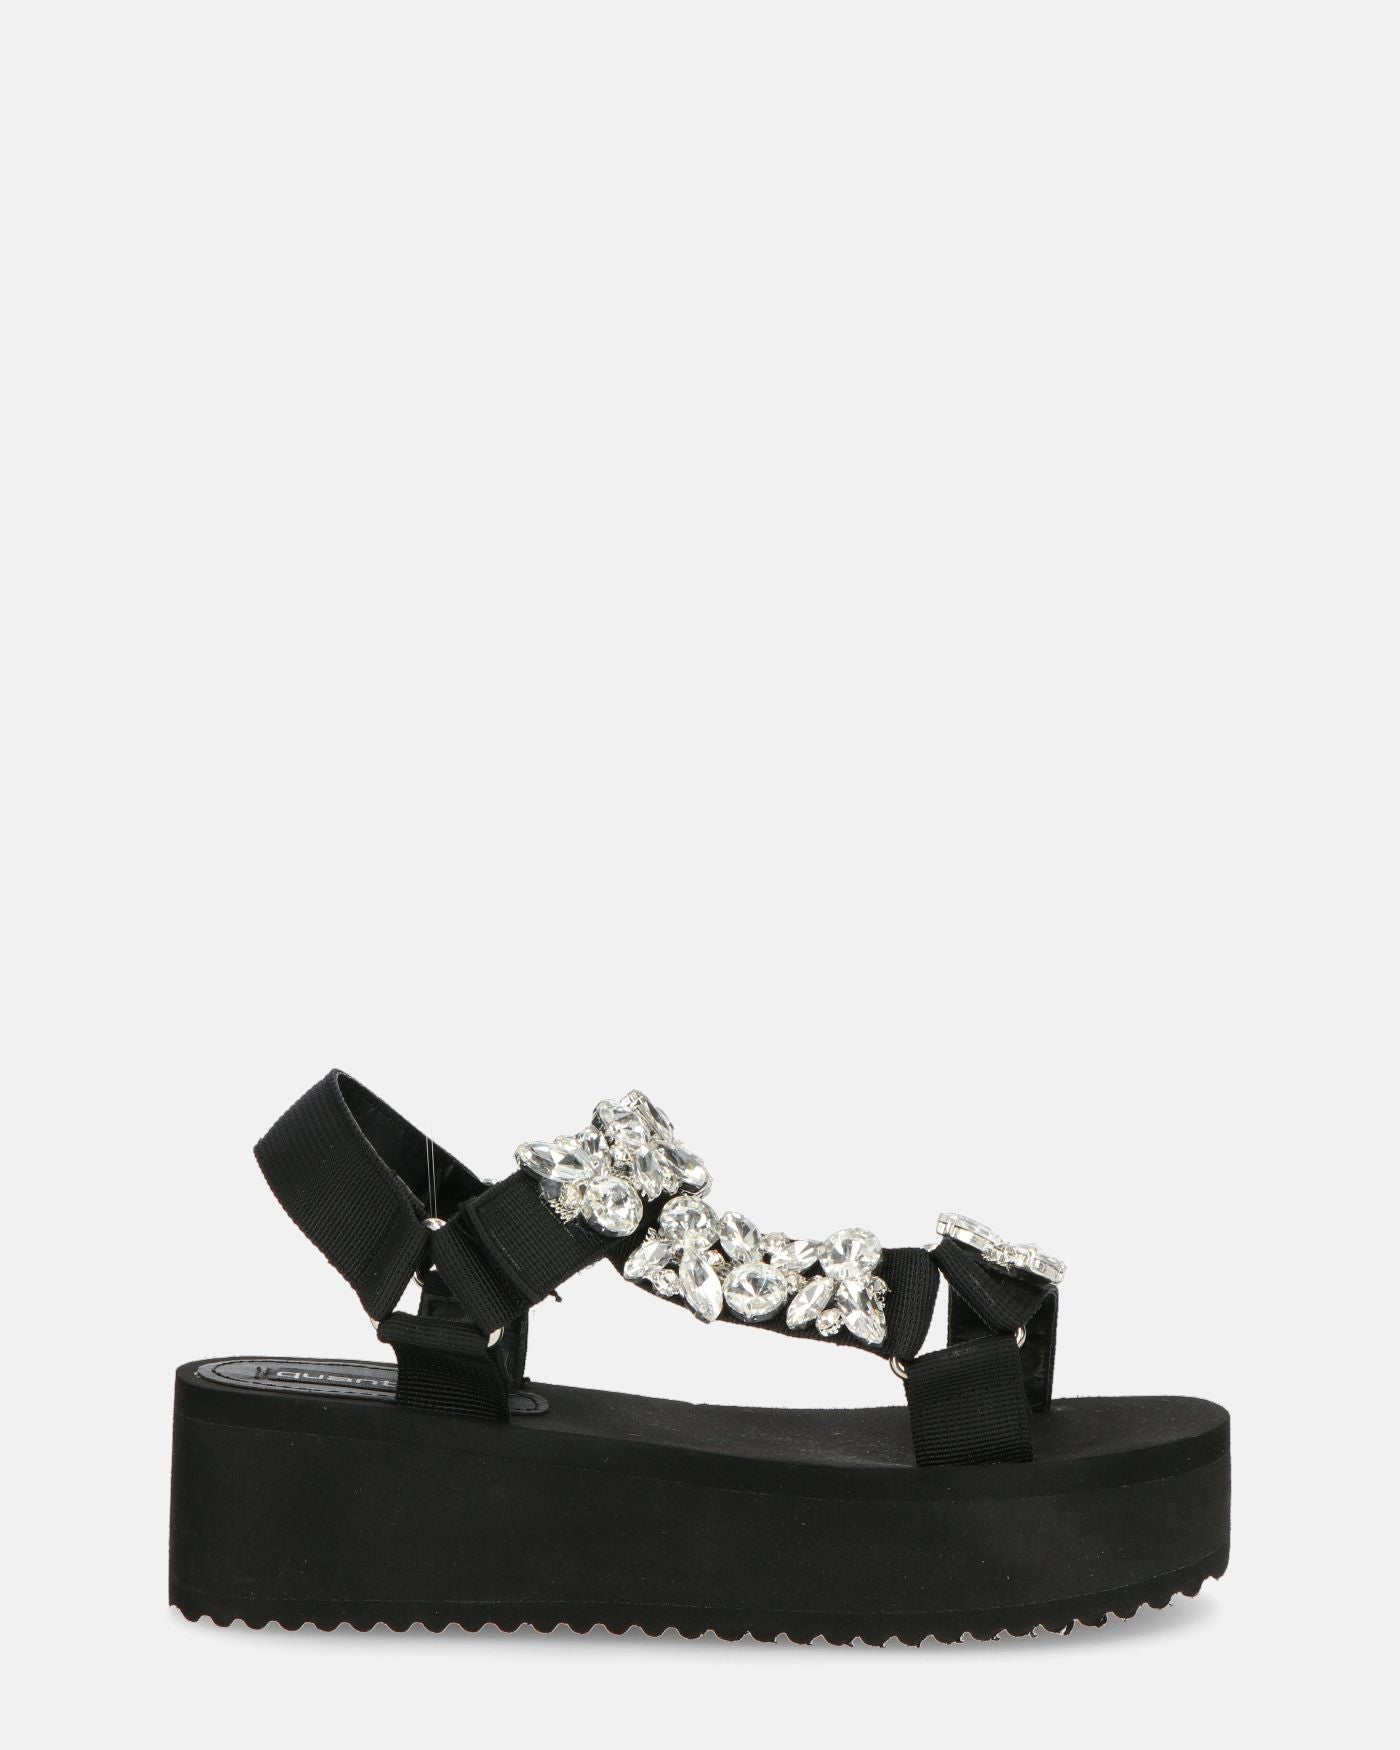 LIZIE - sandalo con plateau in camoscio nero e gemme